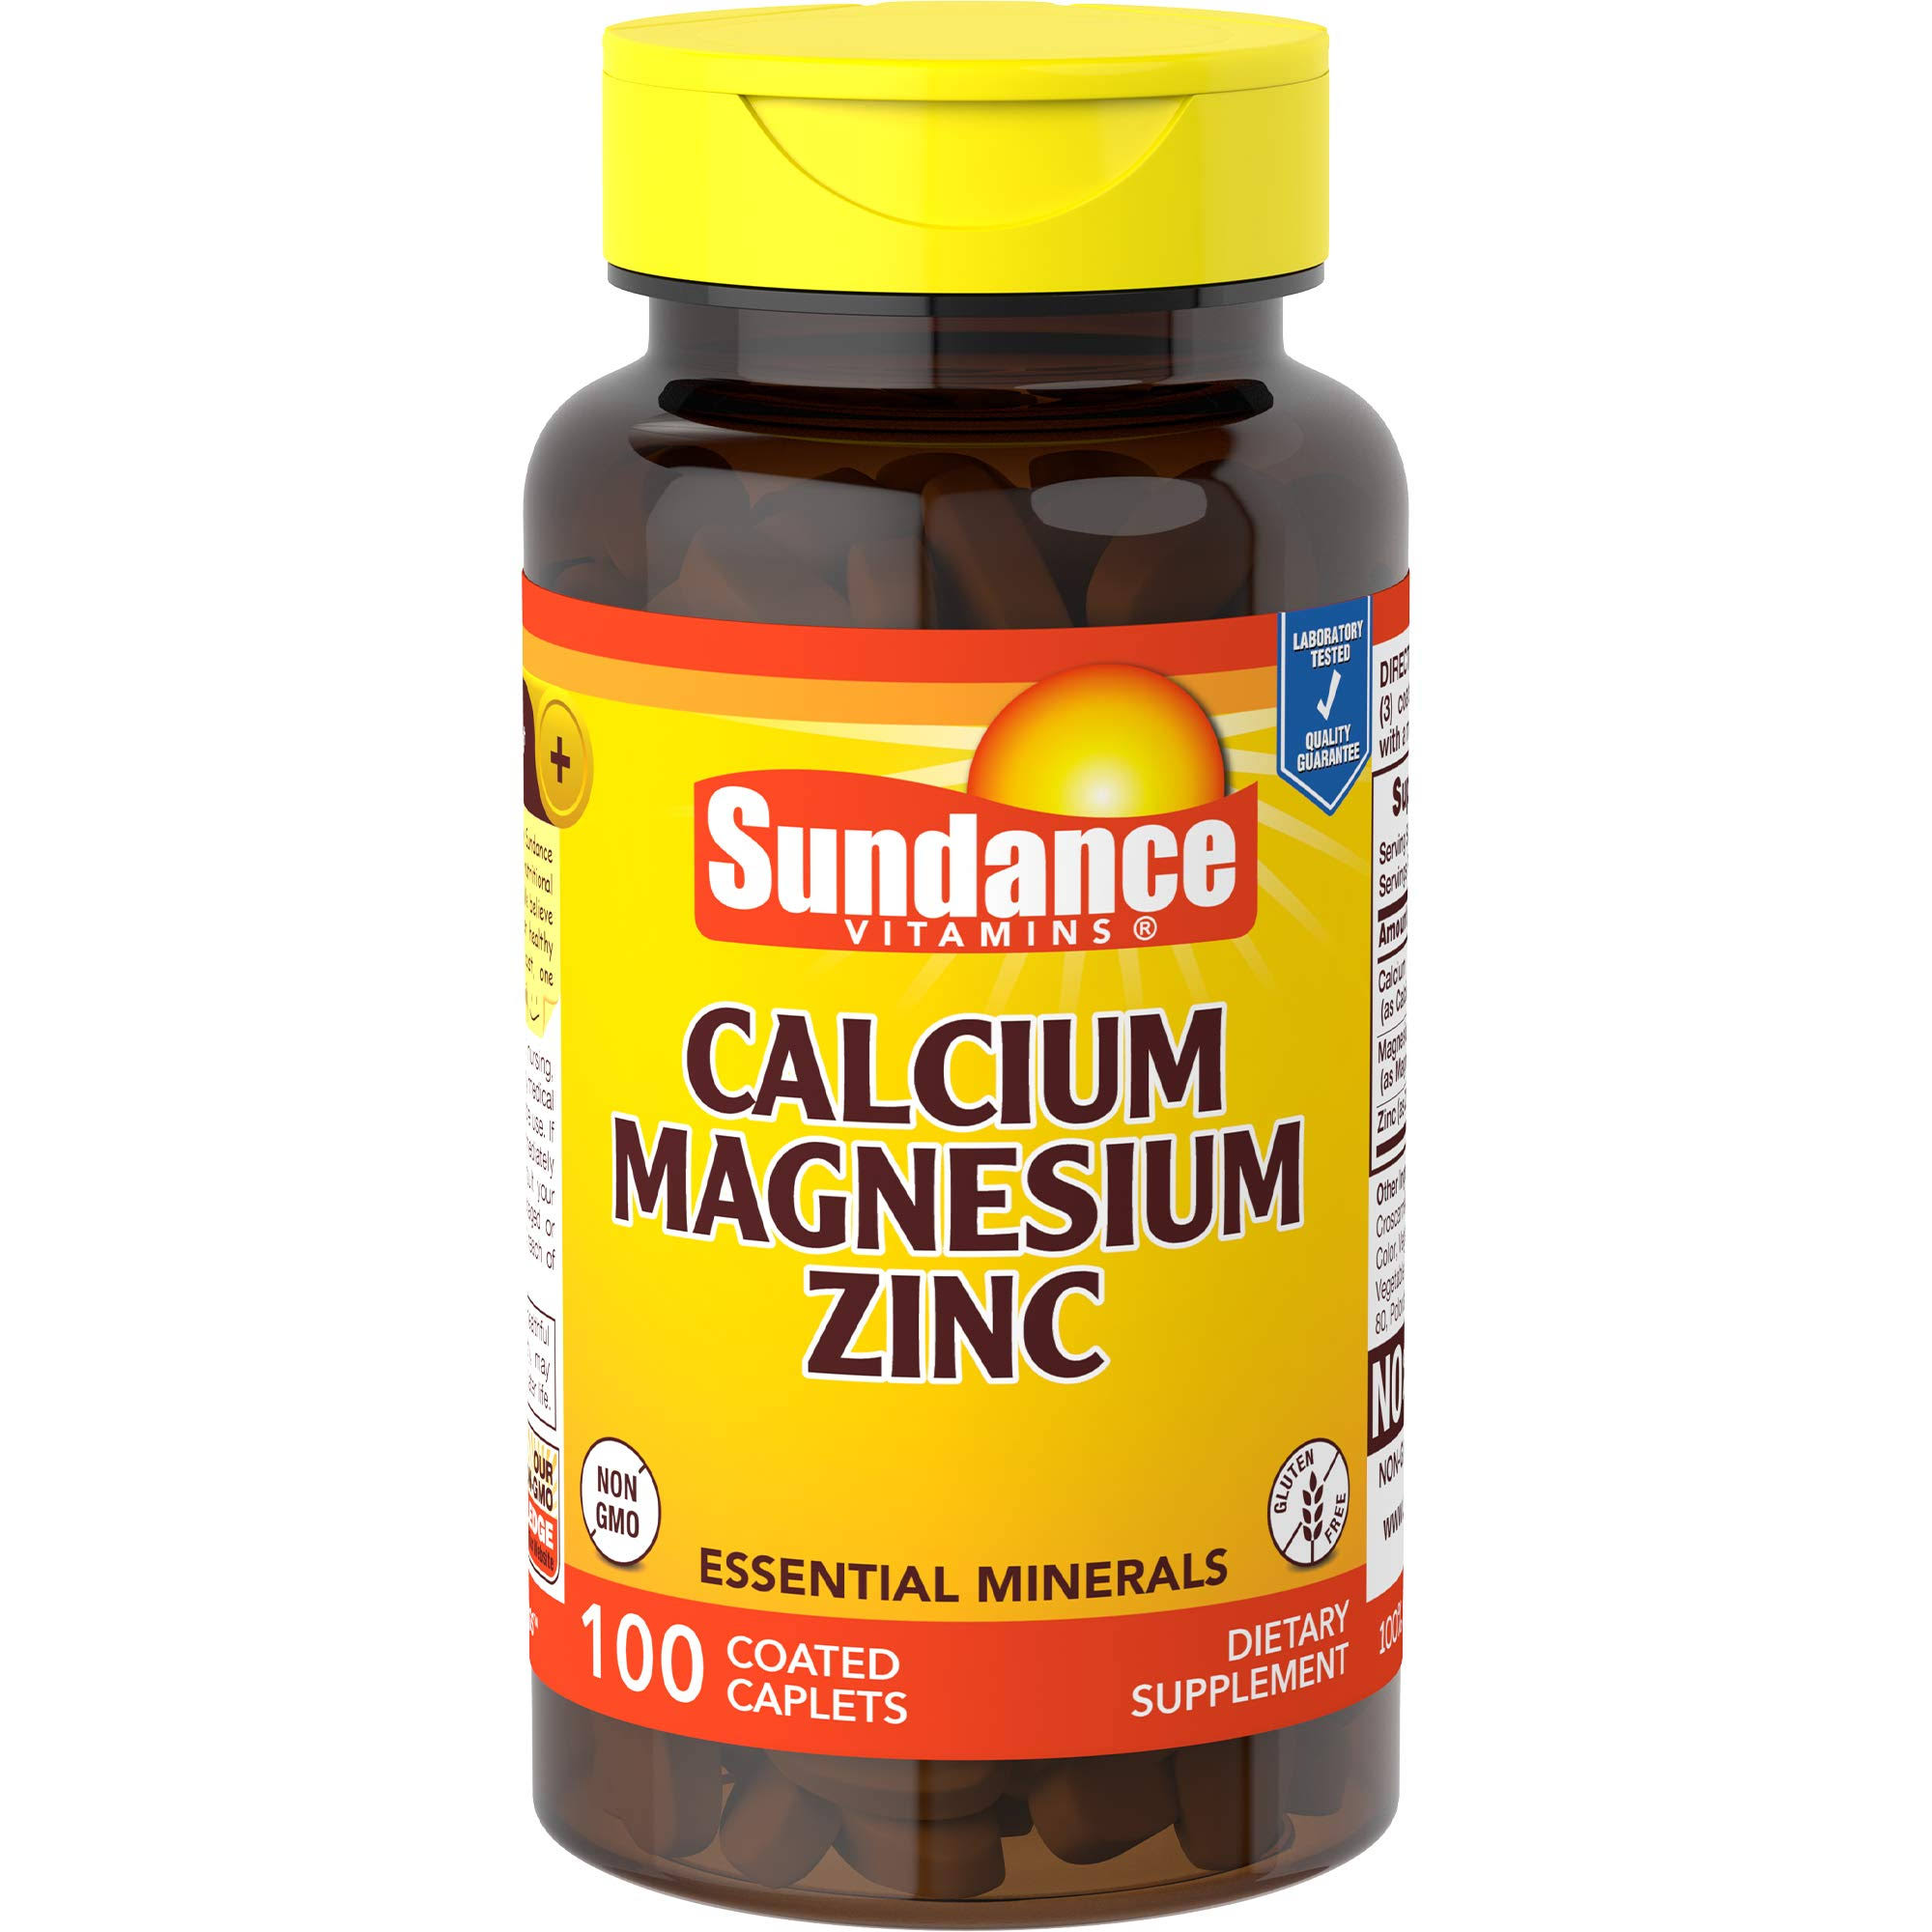 Sundance Calcium Magnesium Zinc D3 Dietary Supplement - 100ct